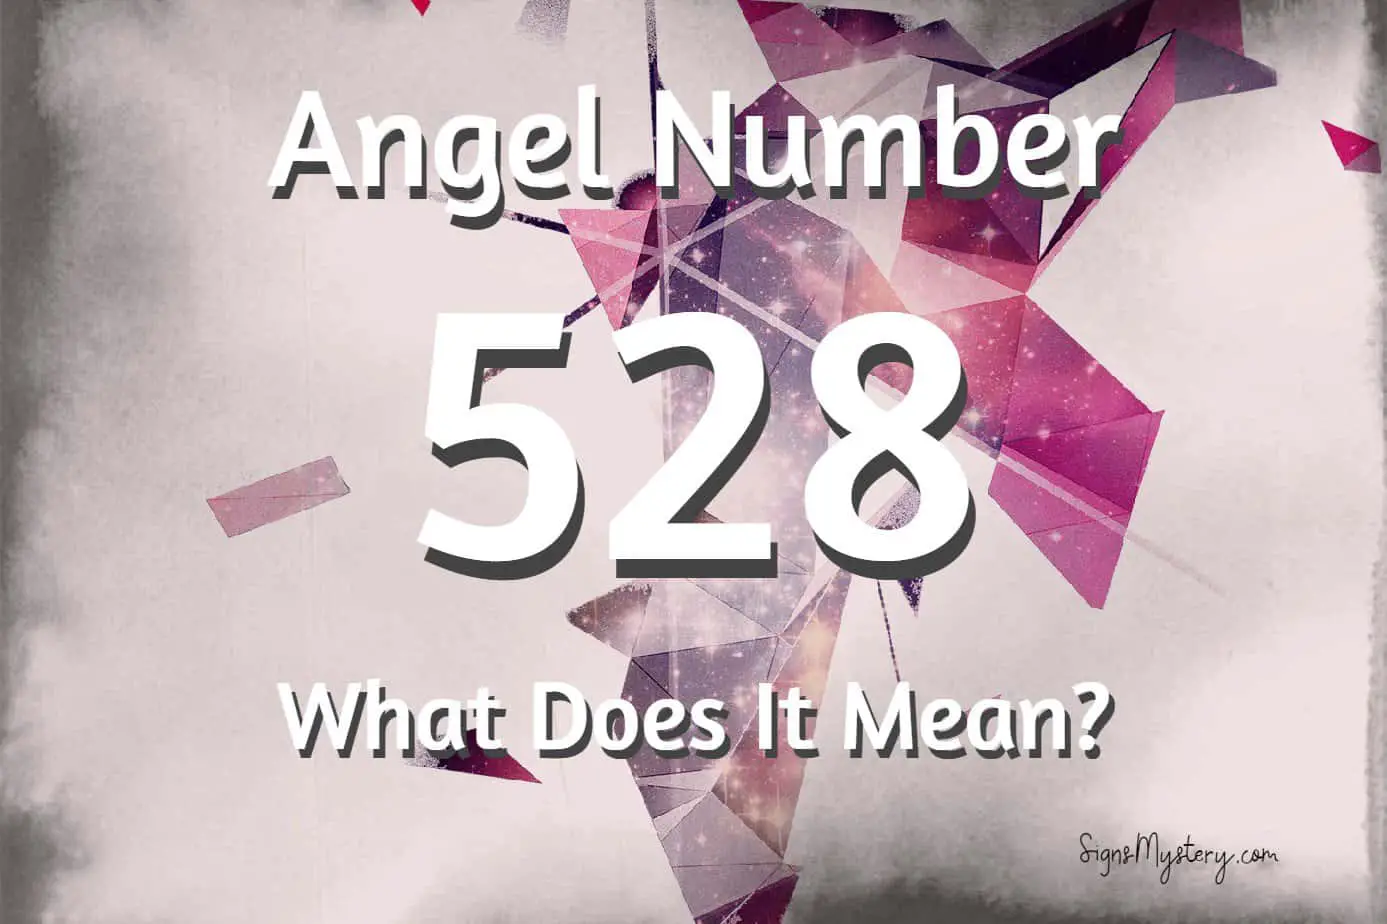 528 angel number